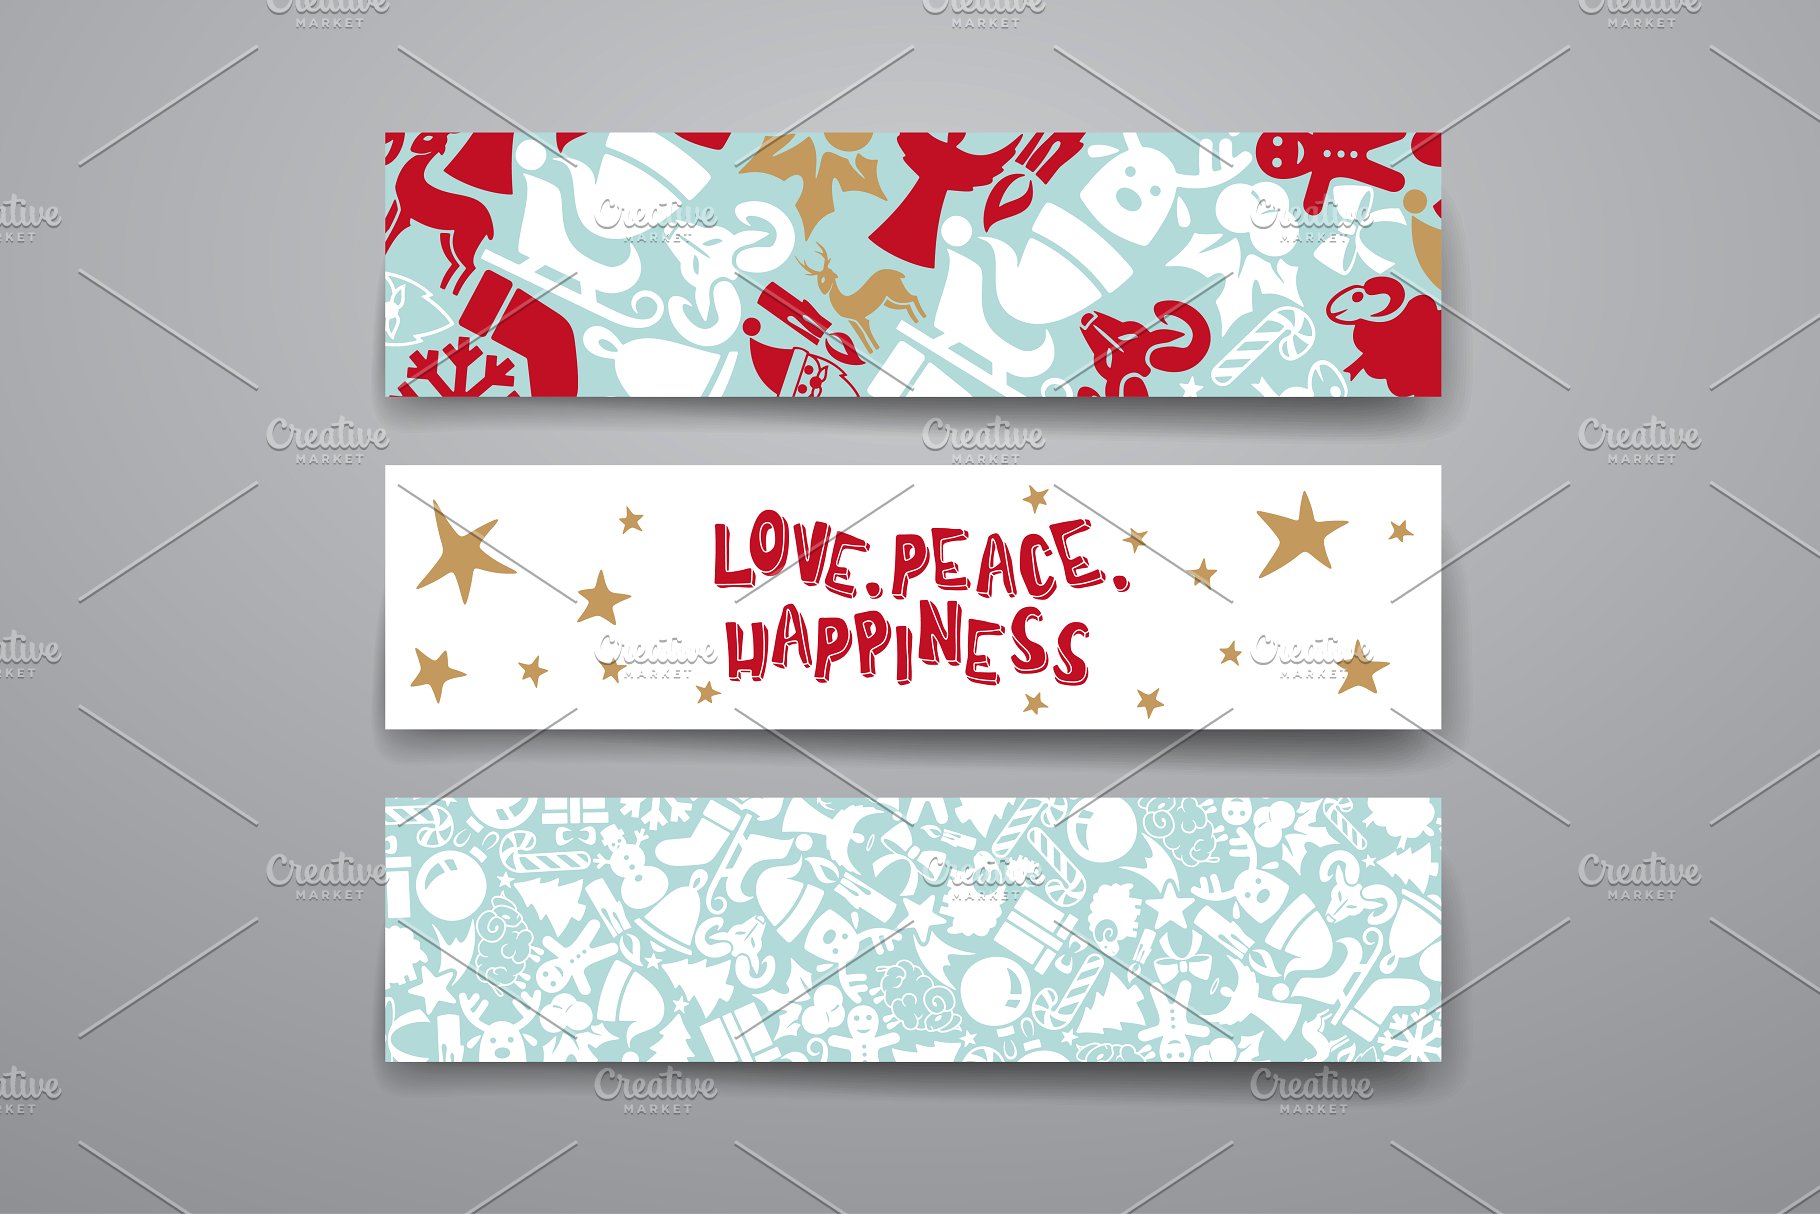 圣诞节日祝贺卡片制作素材 Merry Christmas Card Template插图(4)